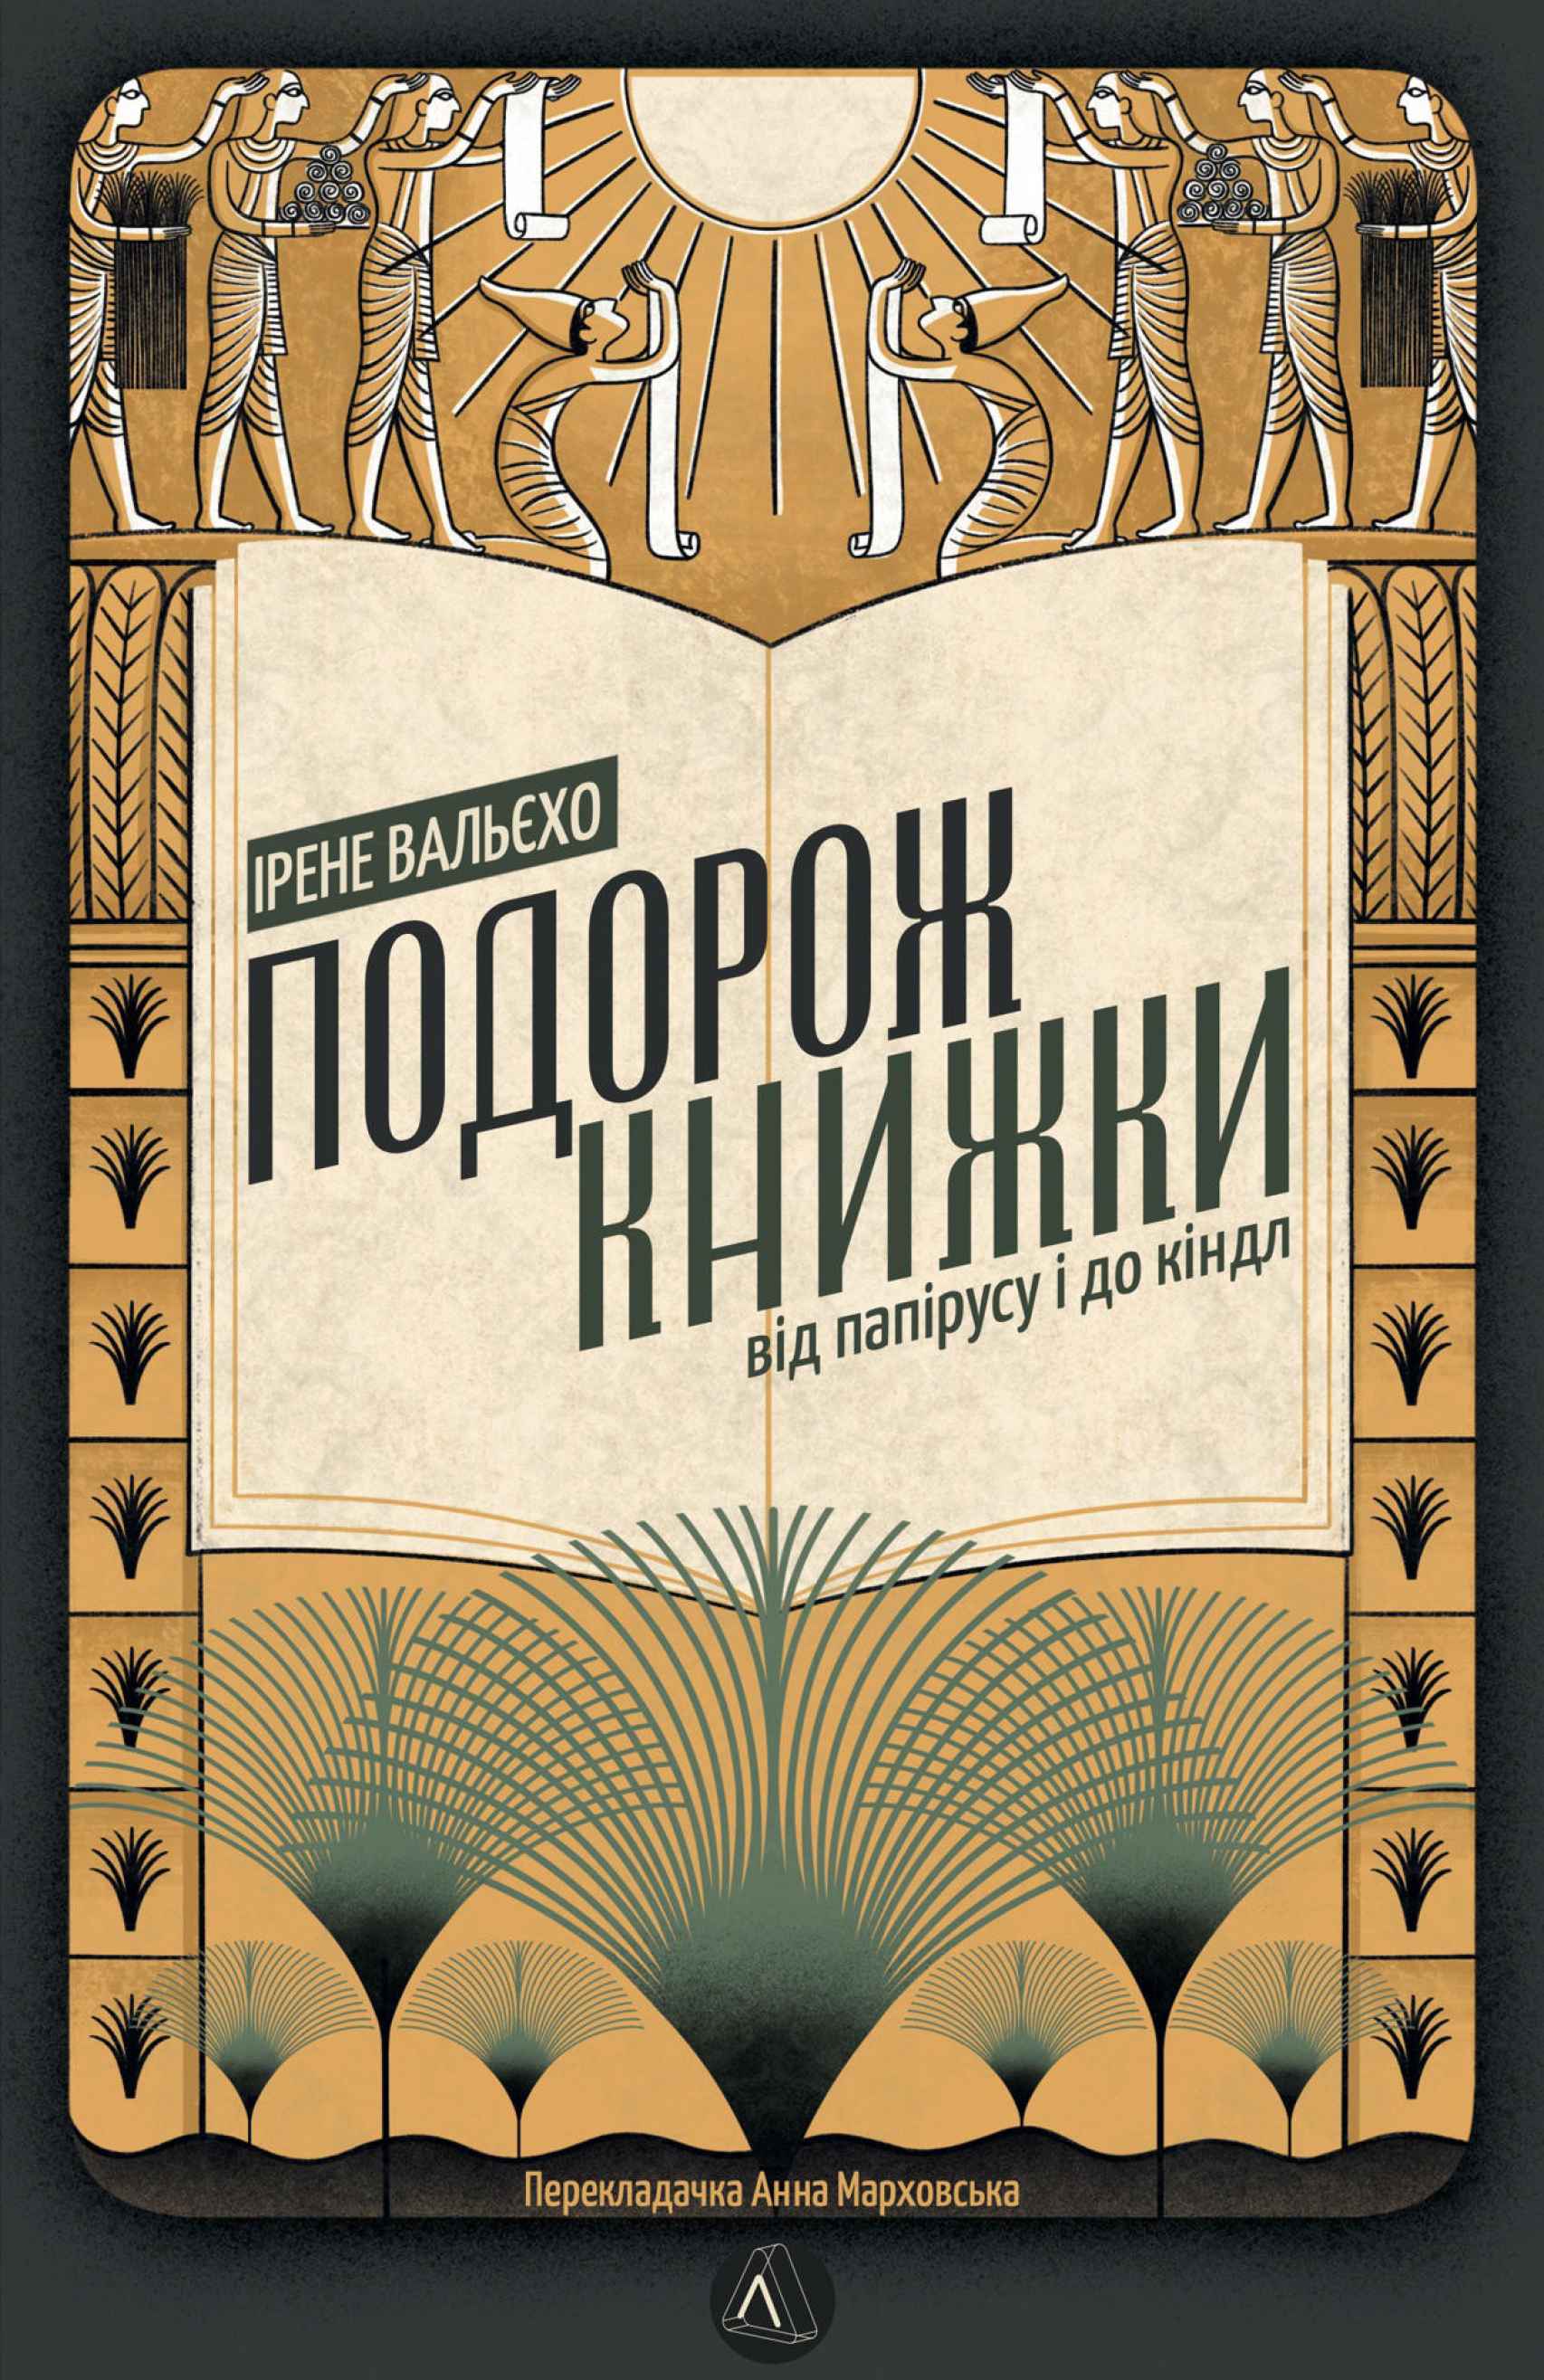 Portada de la edición ucraniana de 'El infinito en un junco', que publicará la editorial Laboratory